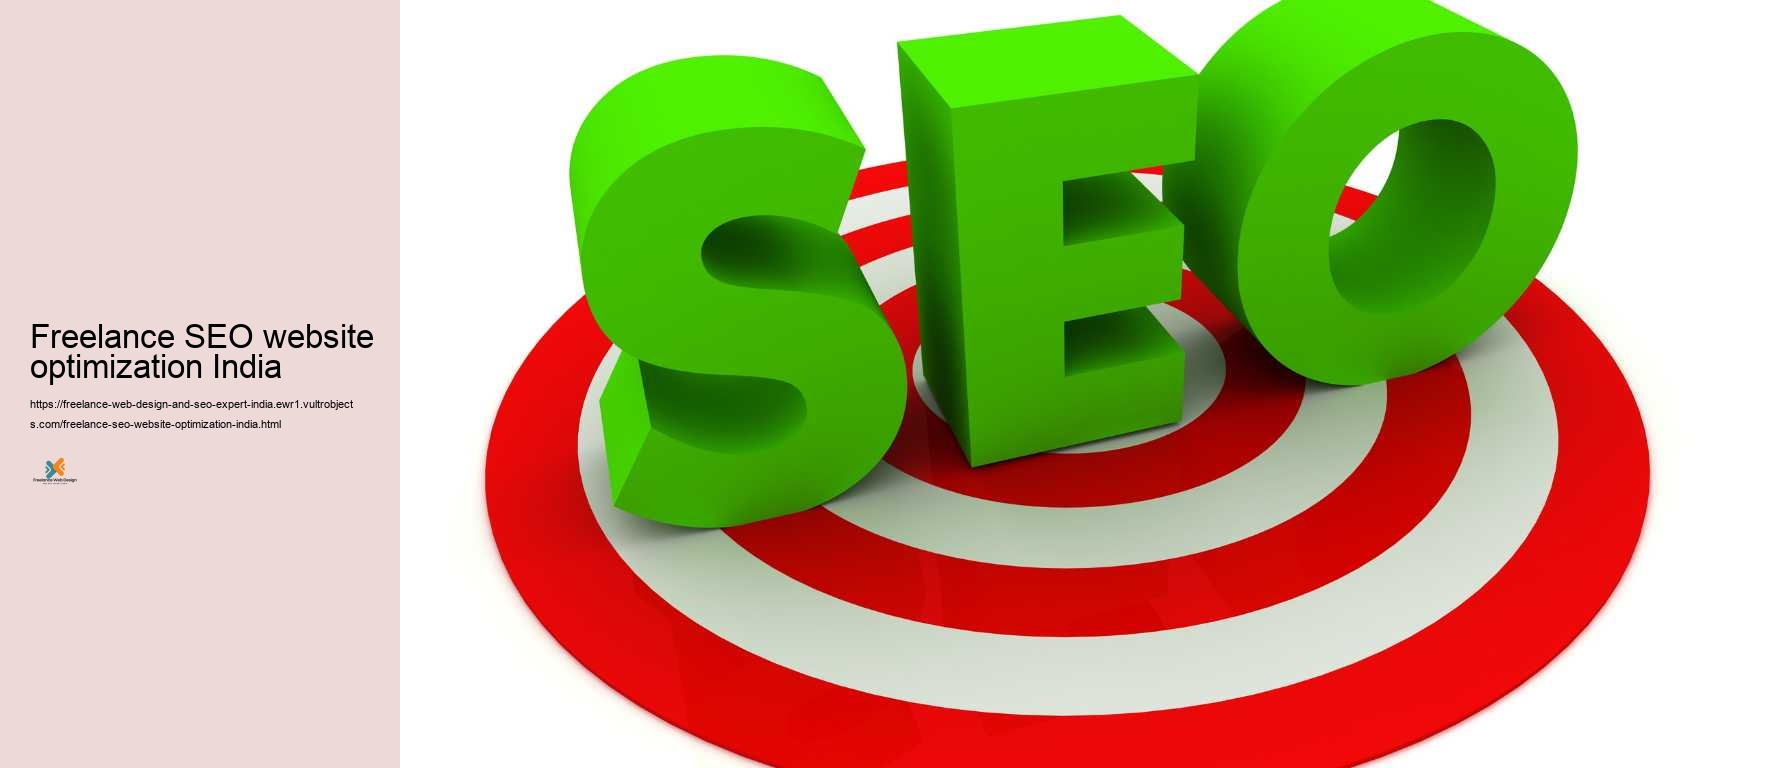 Freelance SEO website optimization India